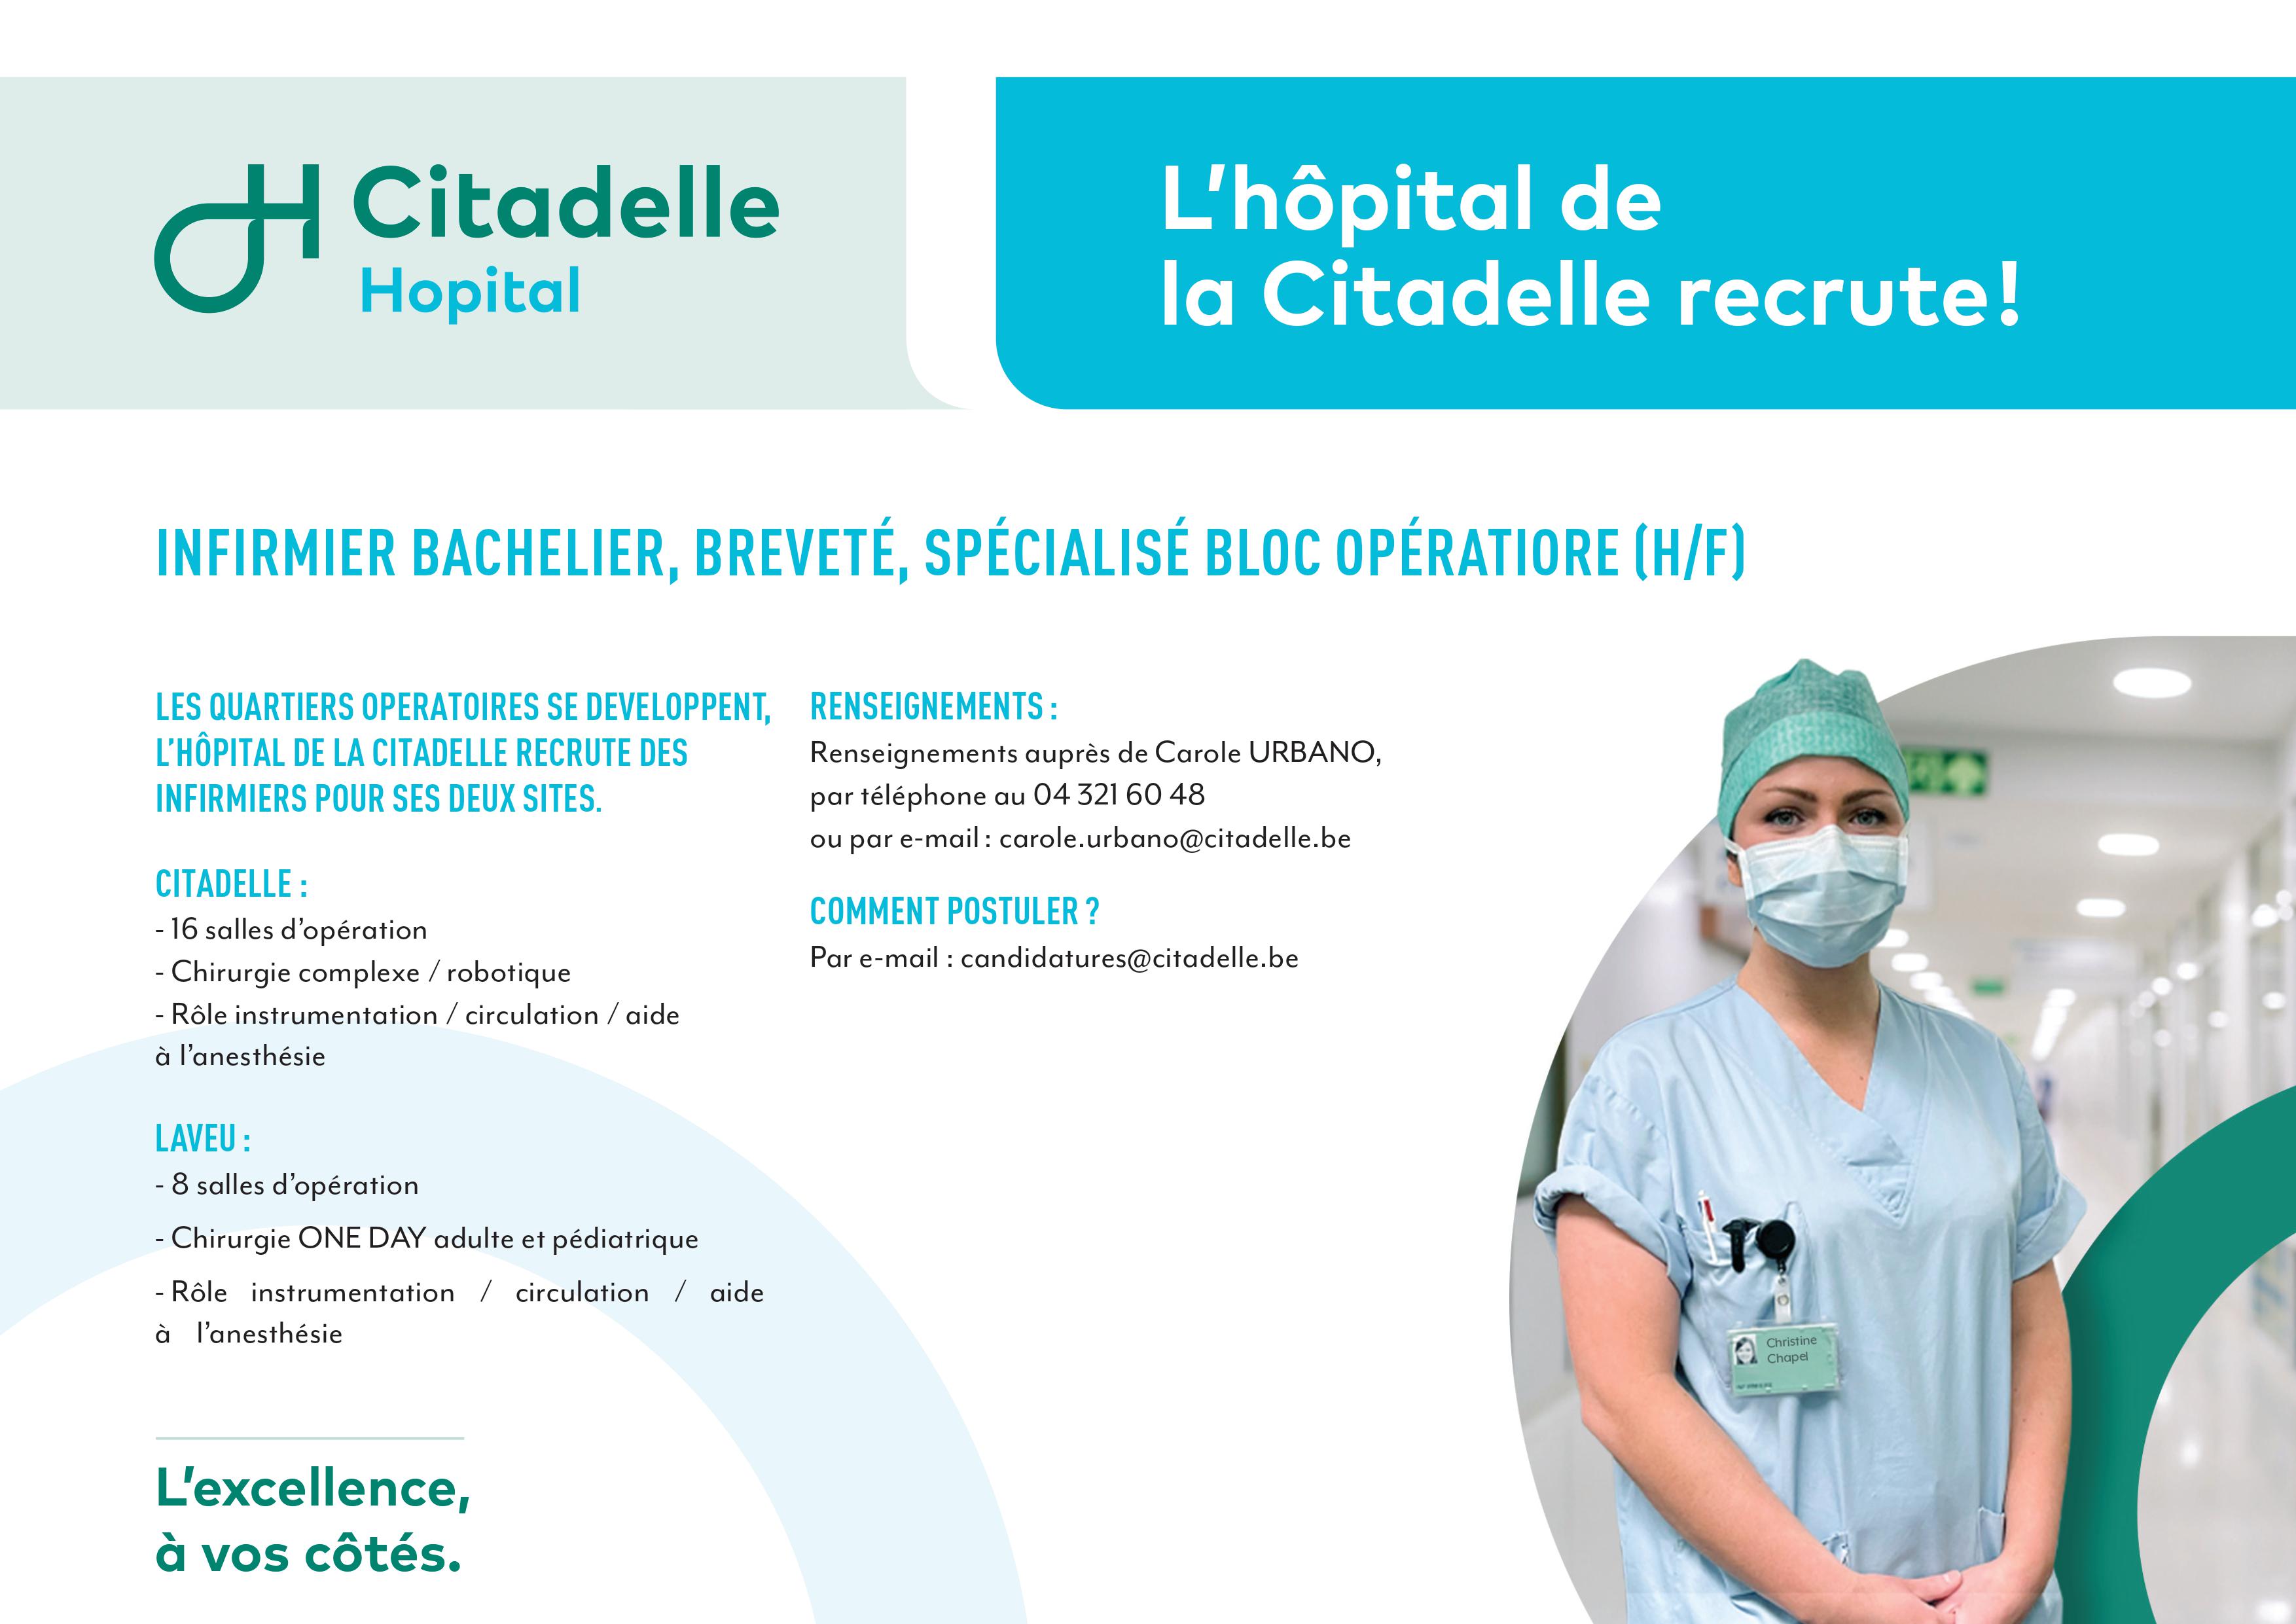 L’hôpital de la Citadelle recrute des infirmiers bacheliers, brevetés, spécialisés bloc opératoire (h/f)